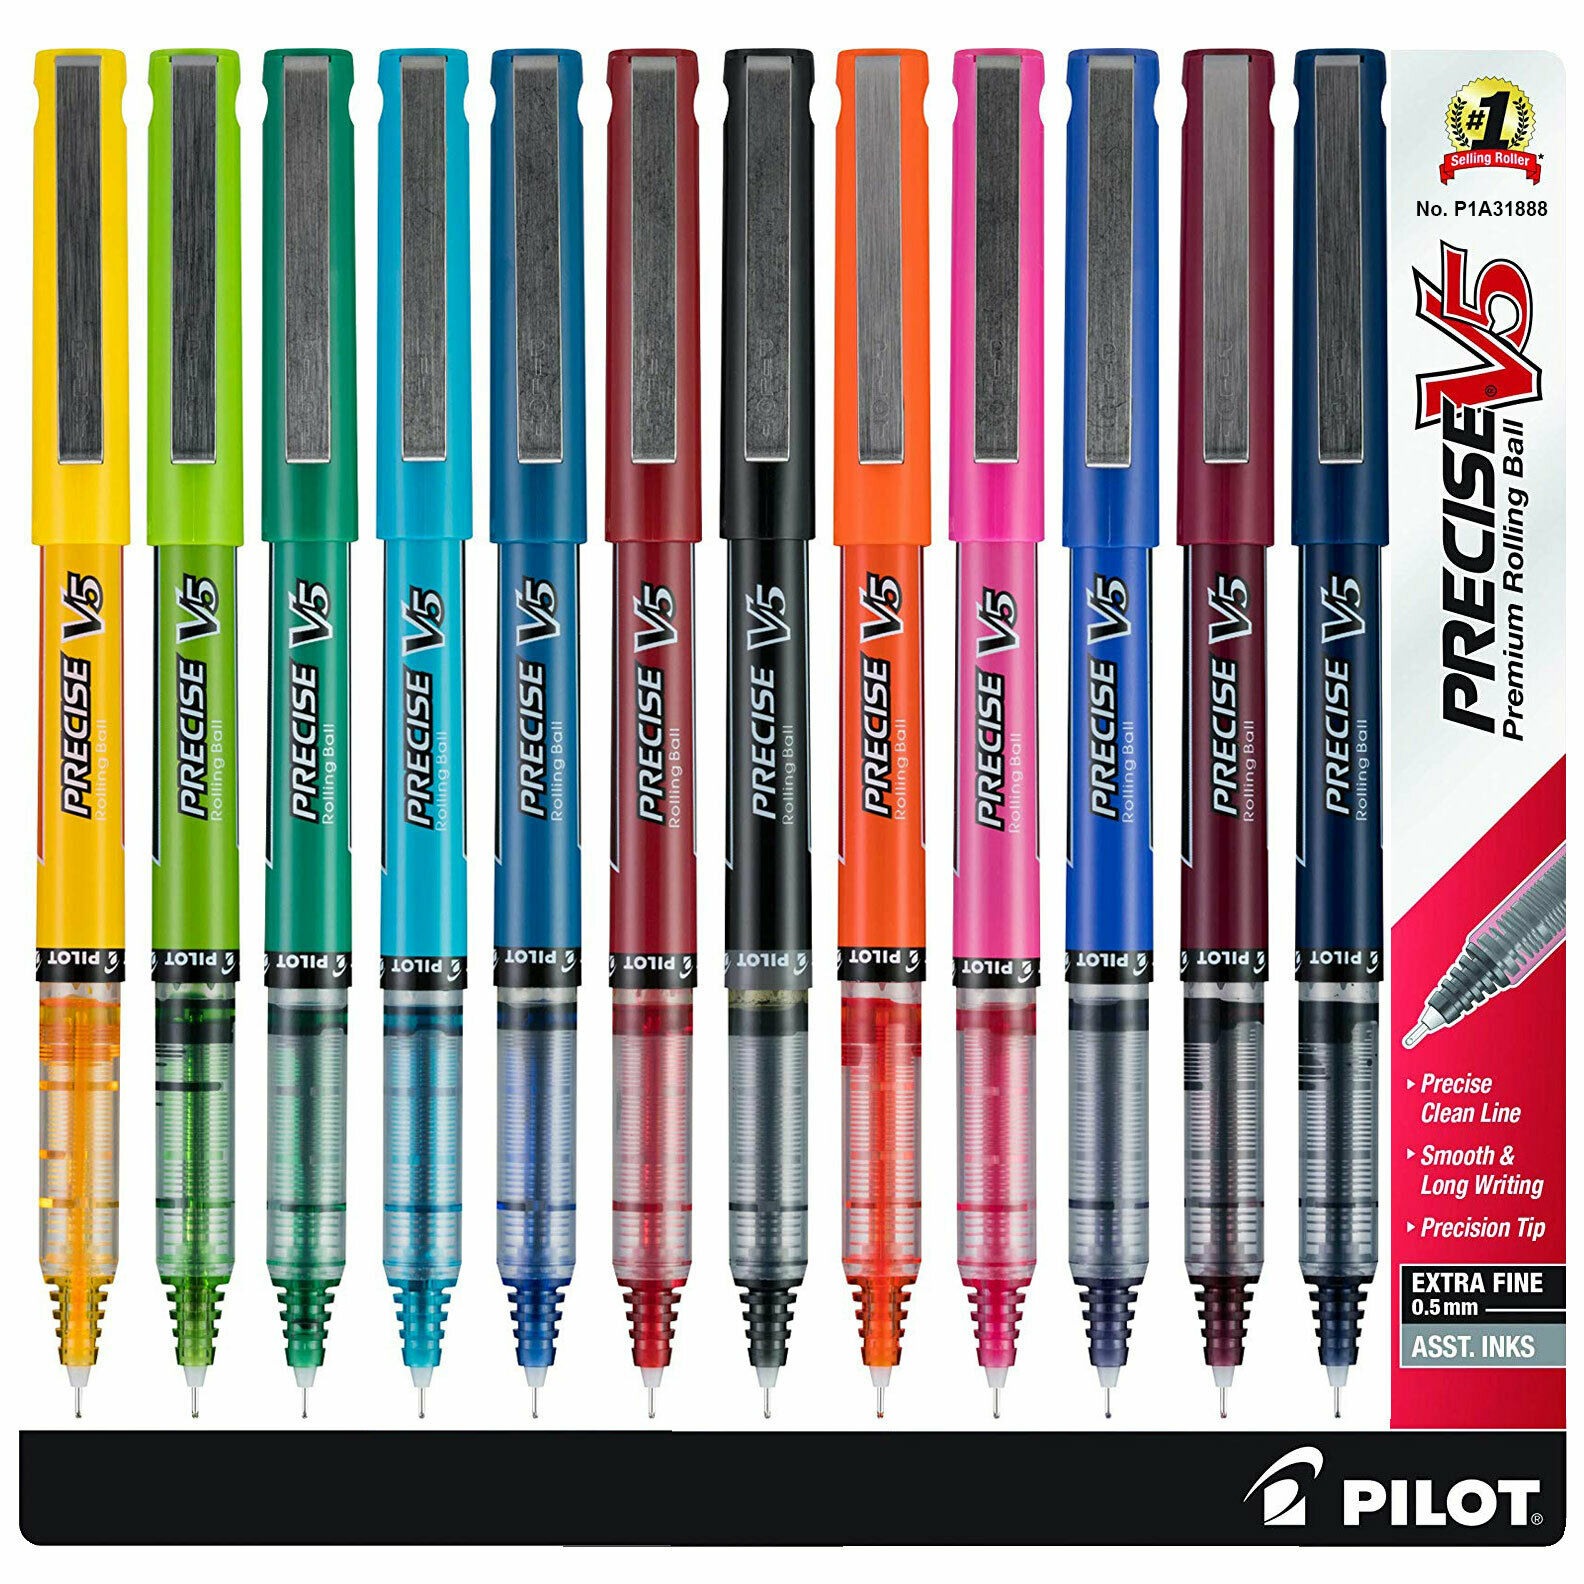 Pilot Precise V5 31888 05mm Extra Fine Rolling Ball Pens 12 Color Set